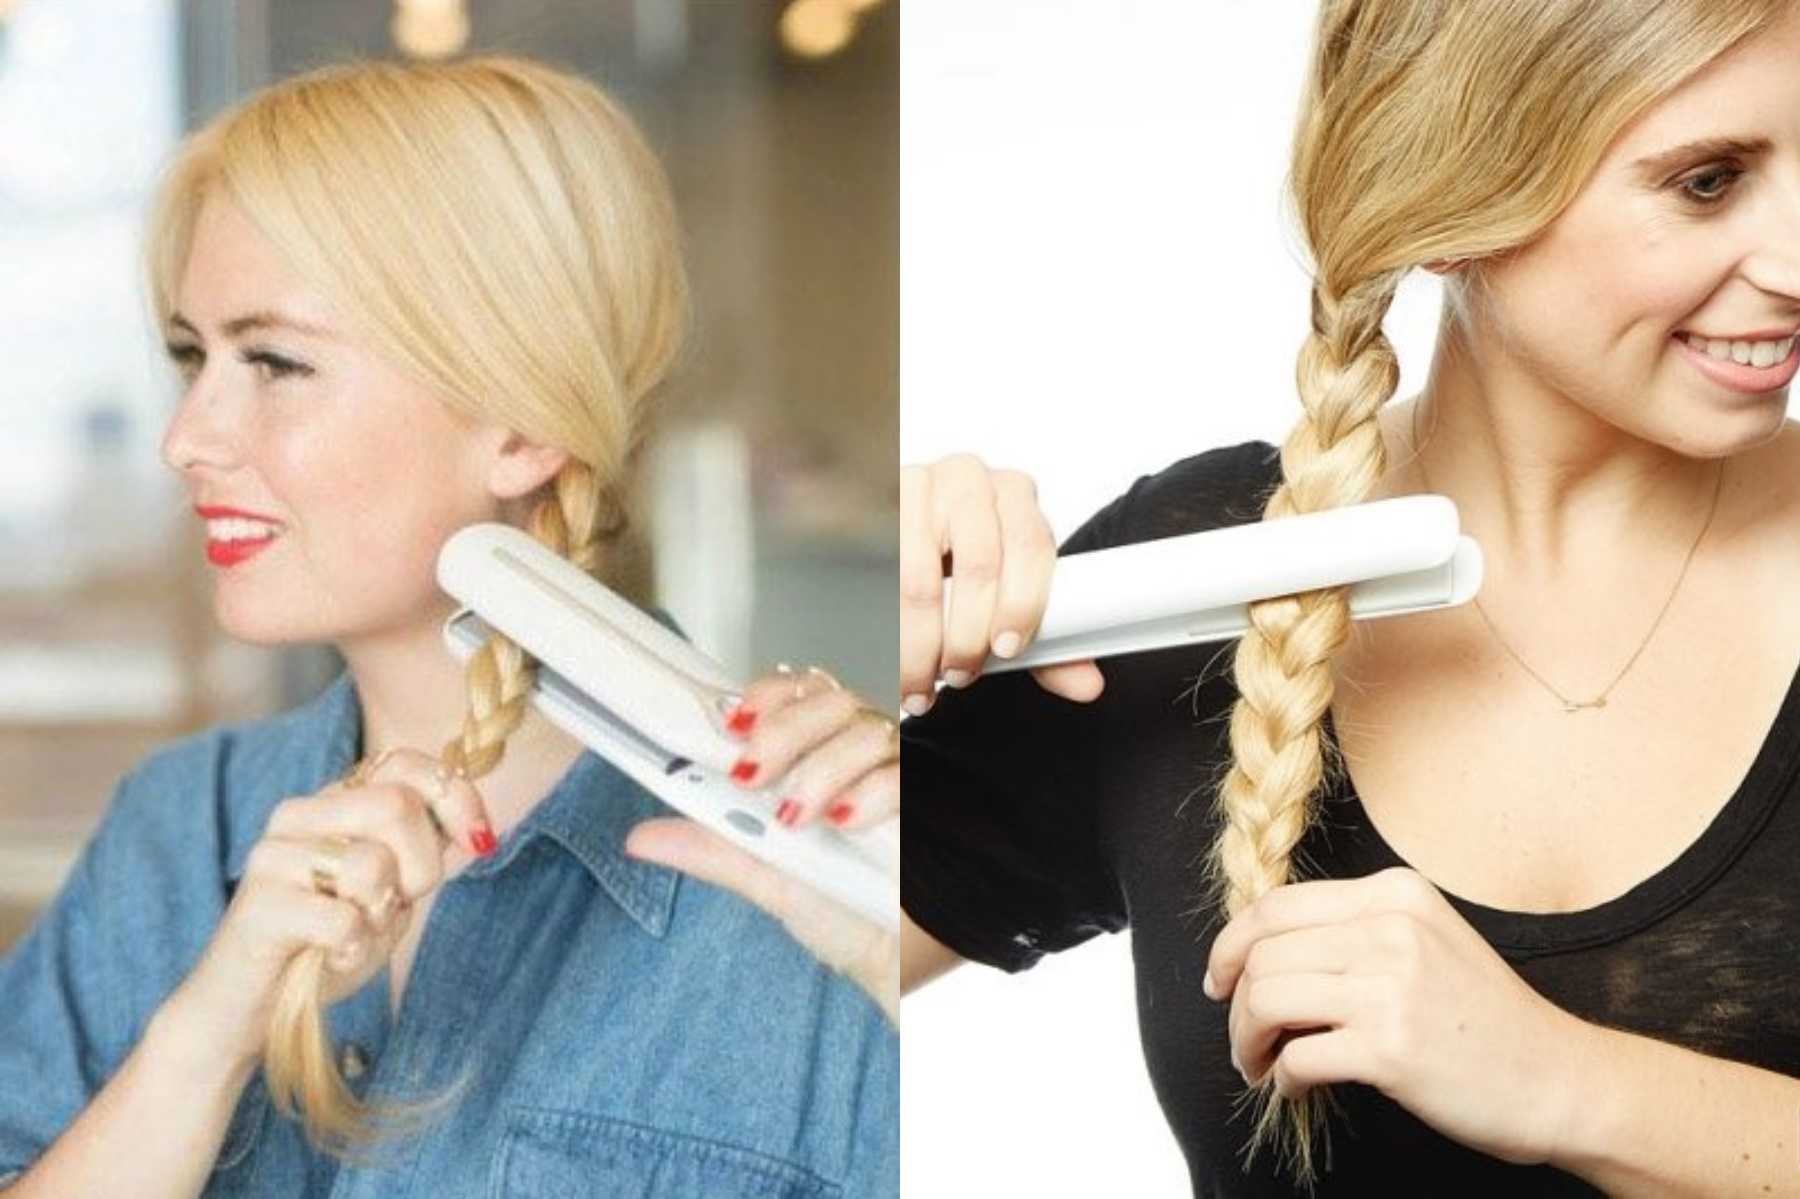 Как закрутить волосы если они прямые